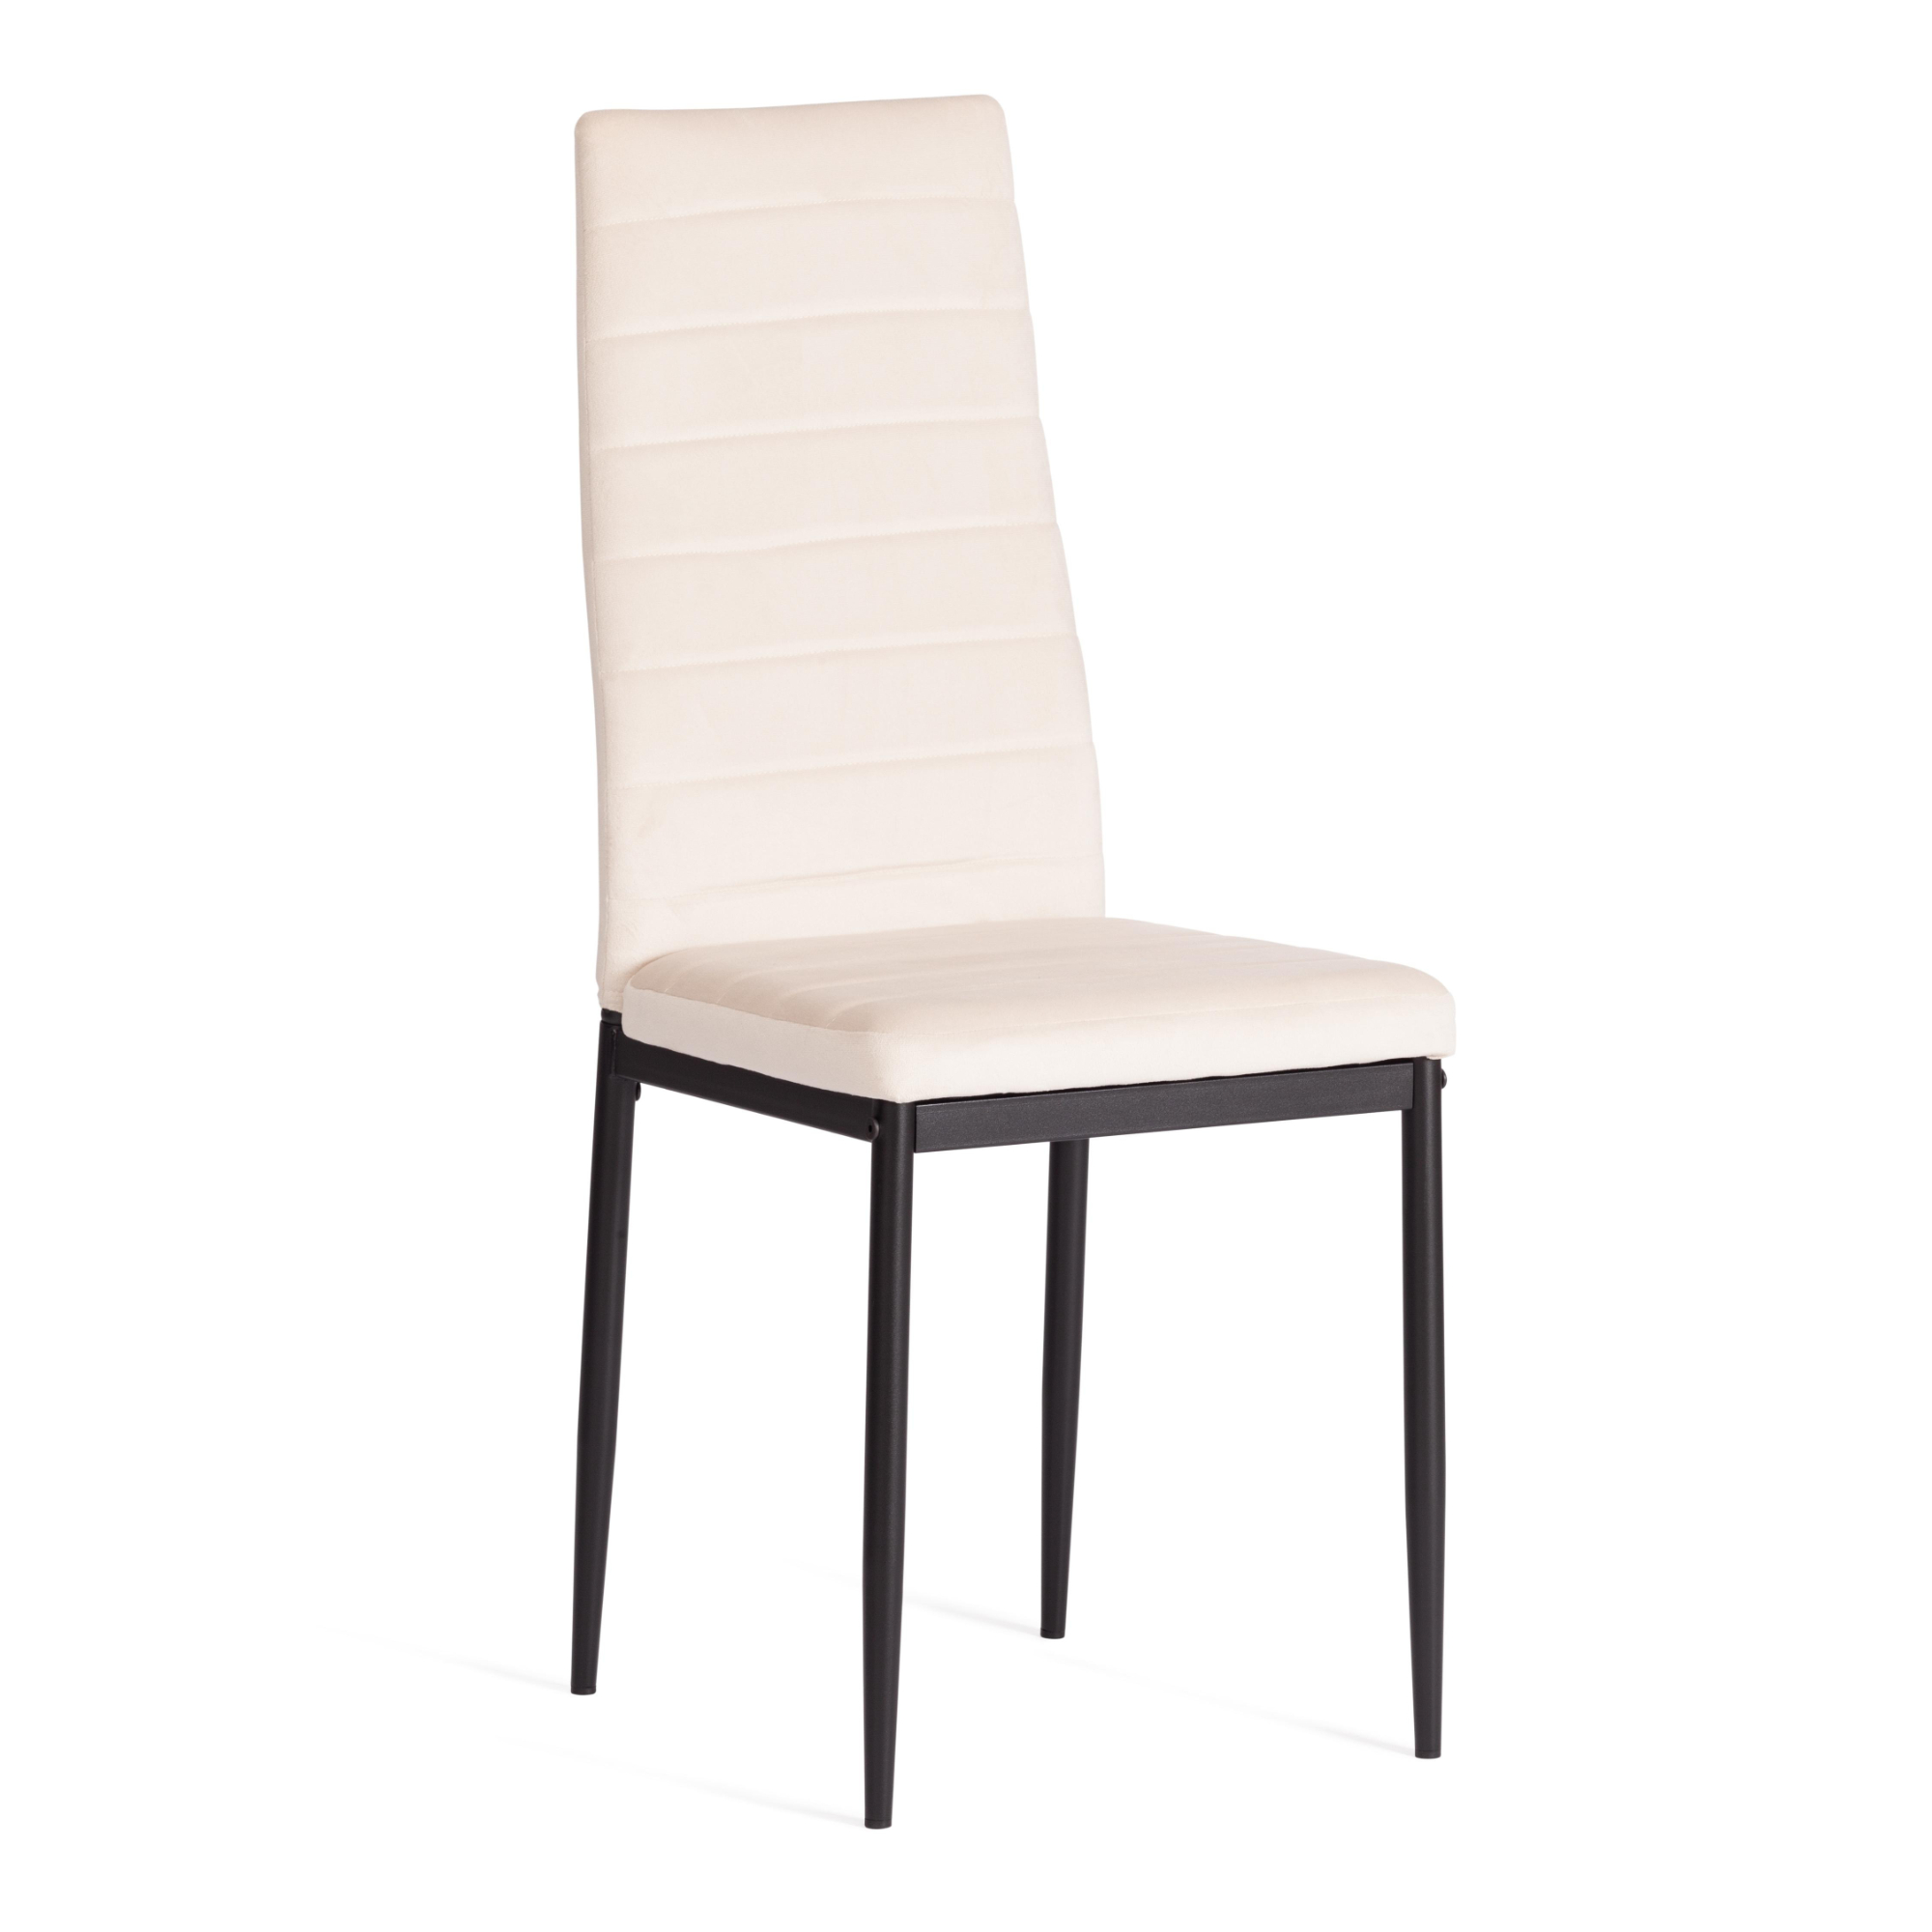 стул пластиковый усиленный стекловолокном для дома и спальни кабинета гостиной комбинированный стол и стул маленький низкий стул для ры Стул ТС Easy вельвет светло-бежевый с черным 49х41х98 см